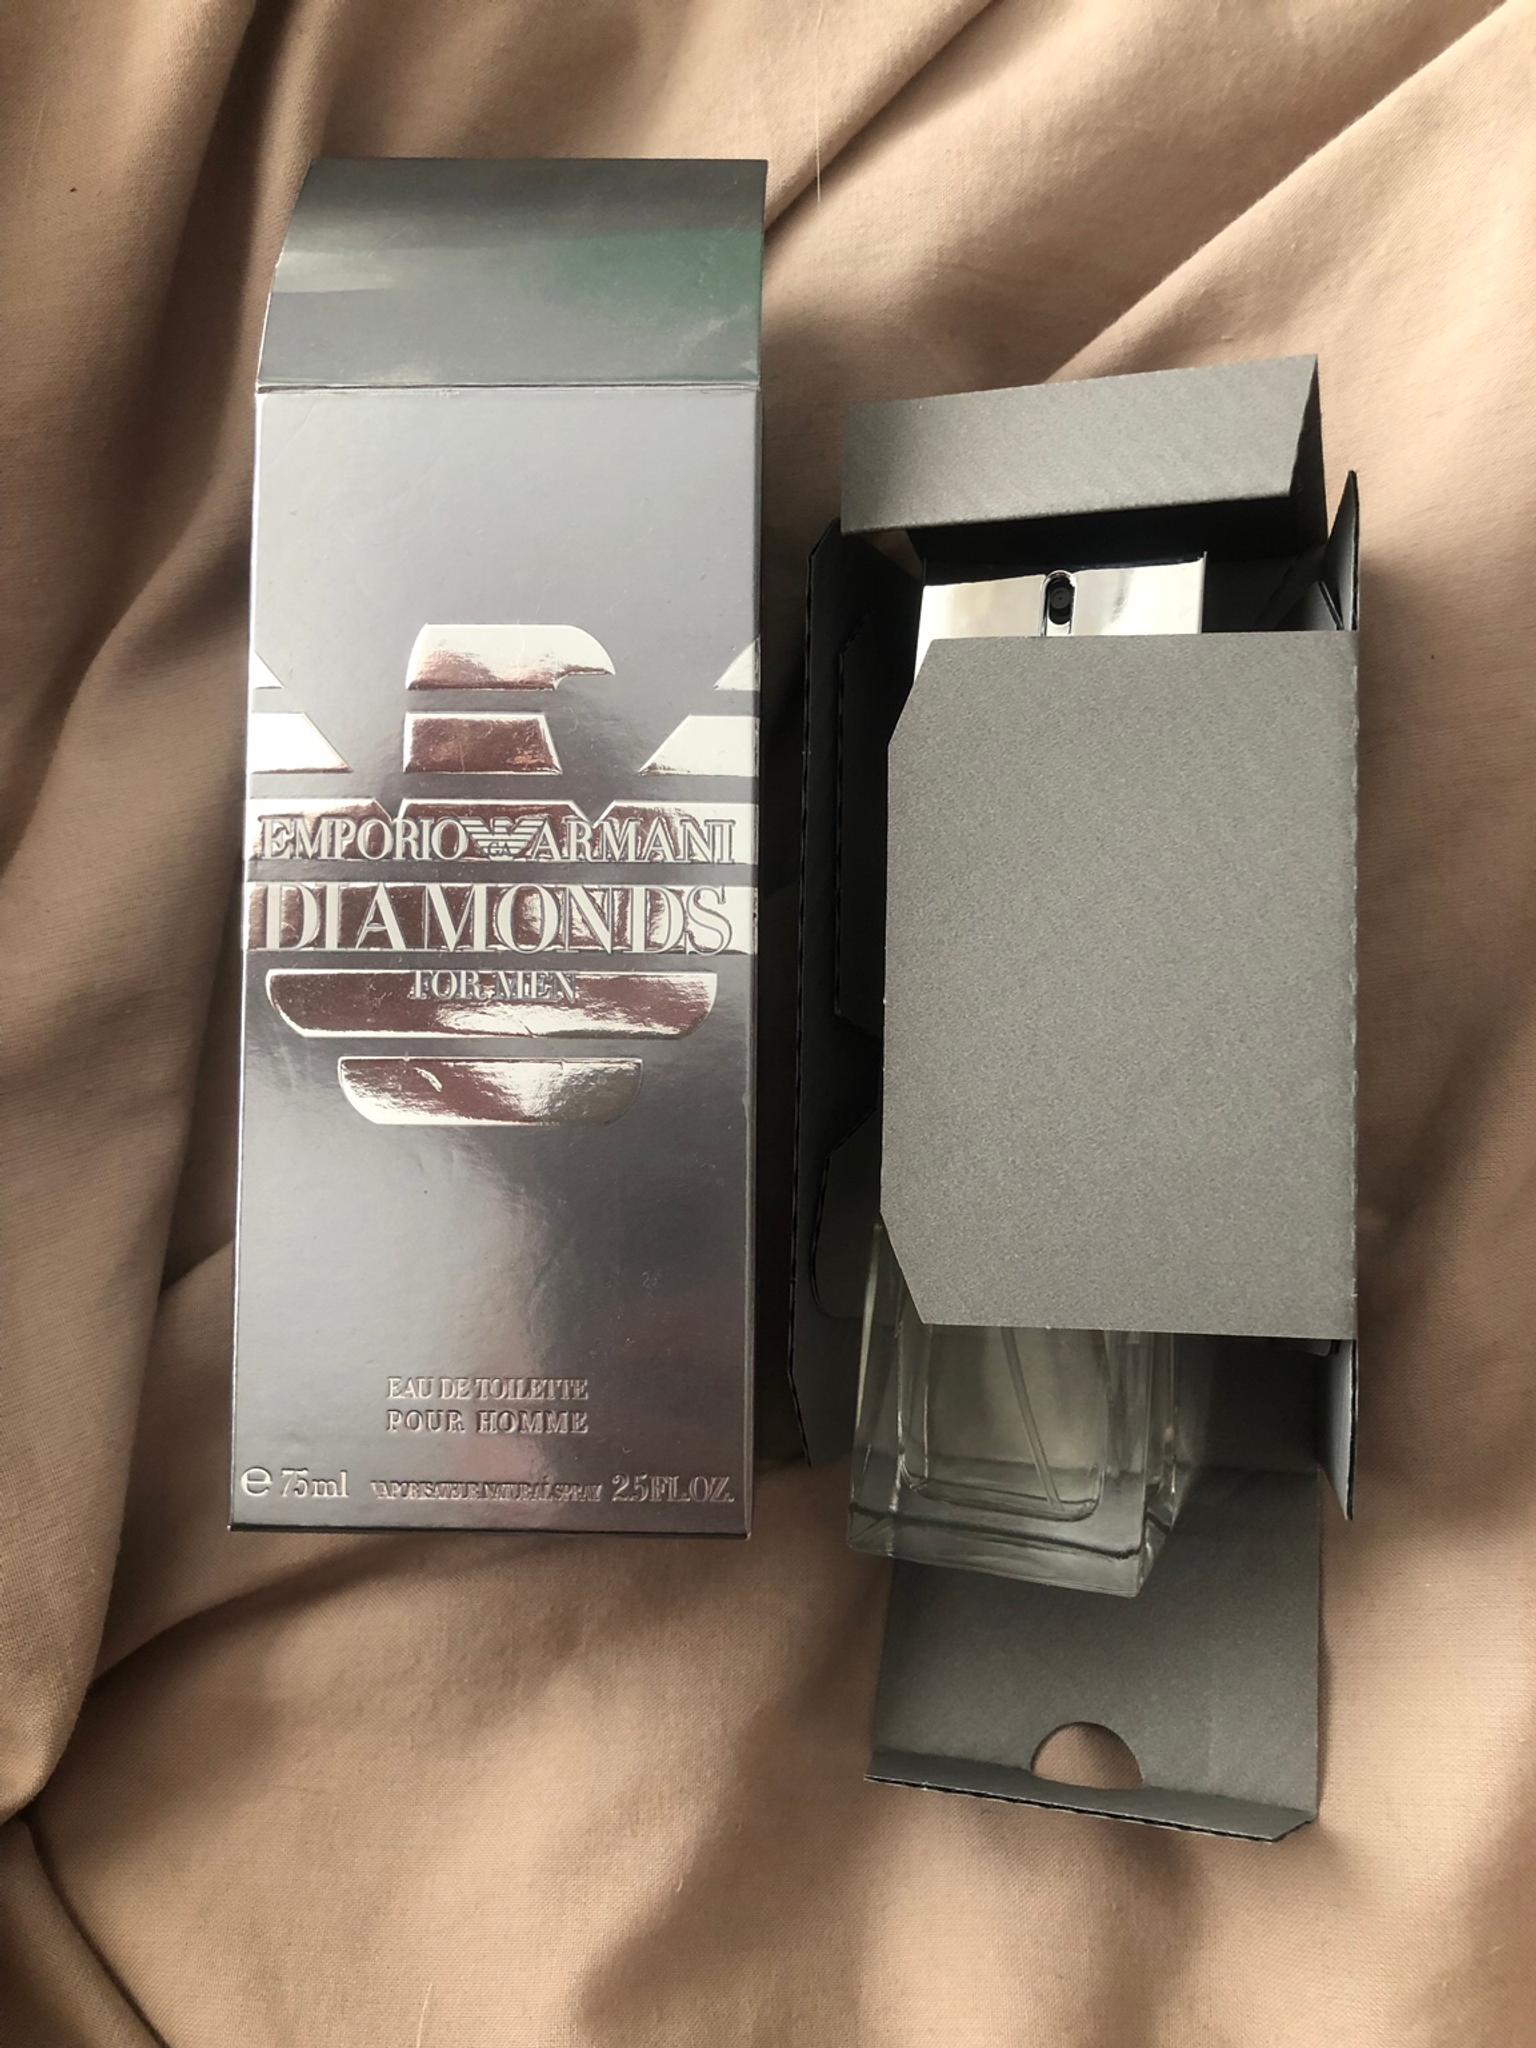 armani diamond aftershave